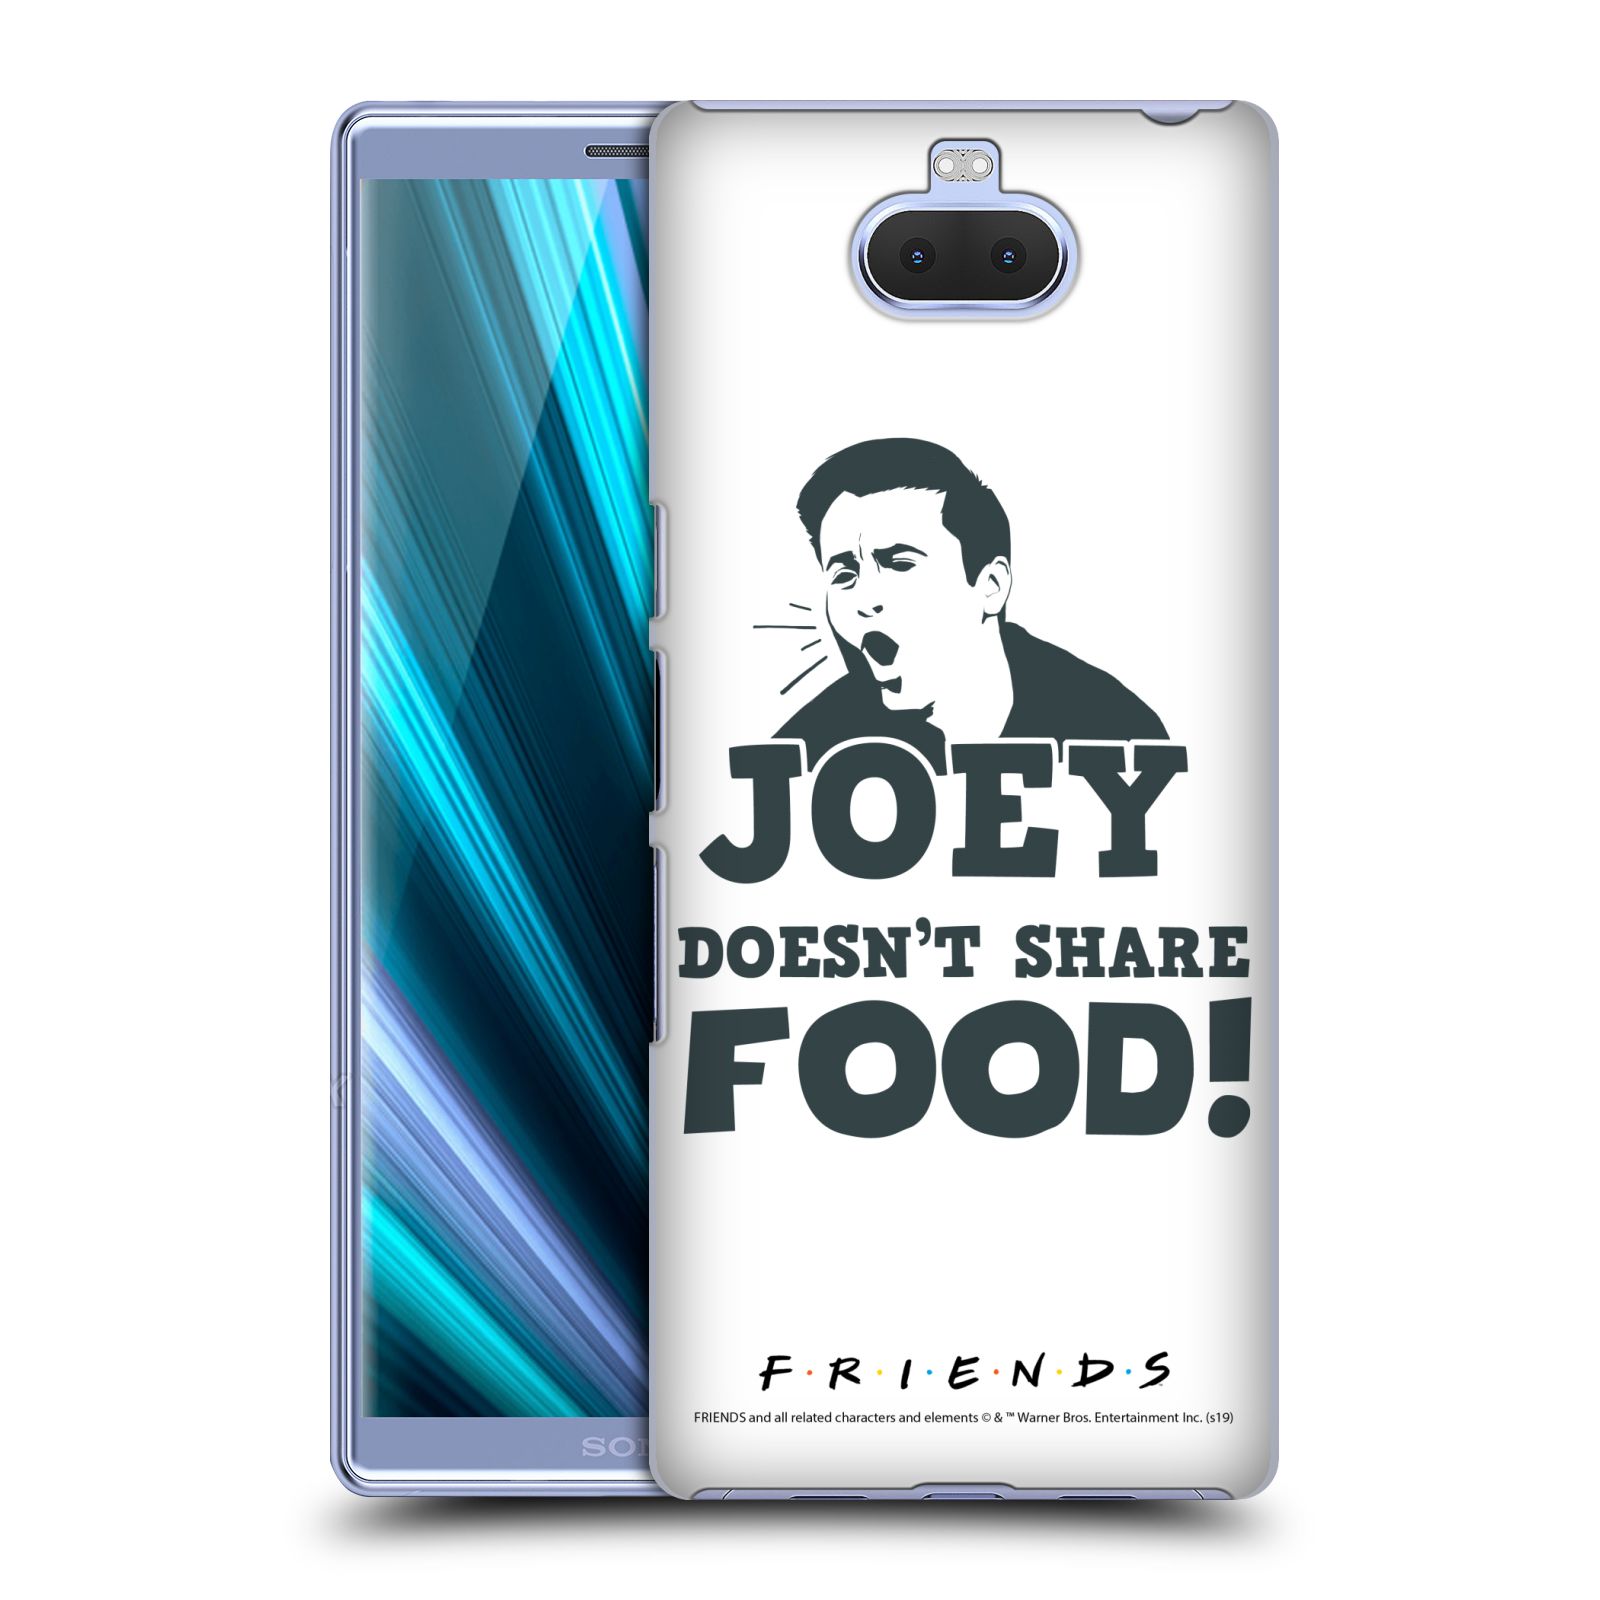 Pouzdro na mobil Sony Xperia 10 - HEAD CASE - Seriál Přátelé - Joey se o jídlo nedělí